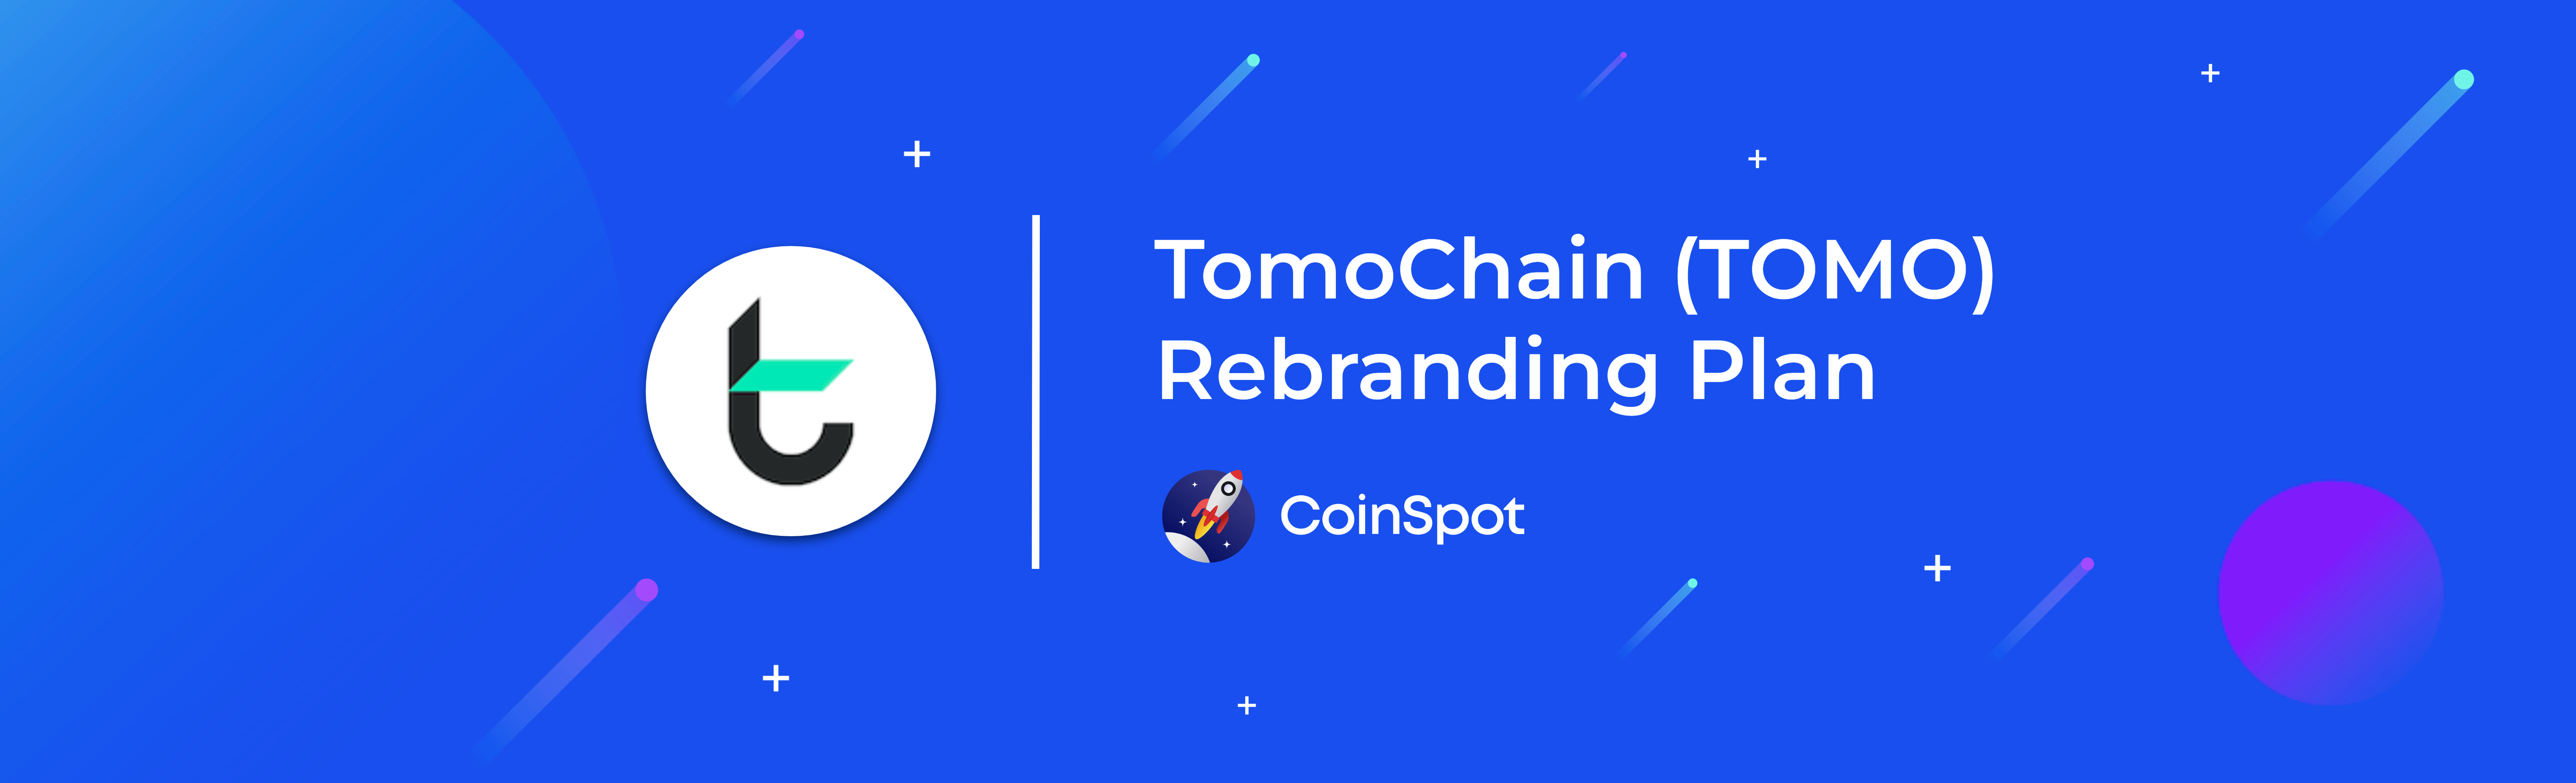 CoinSpot - TOMO Rebranding Plan.png